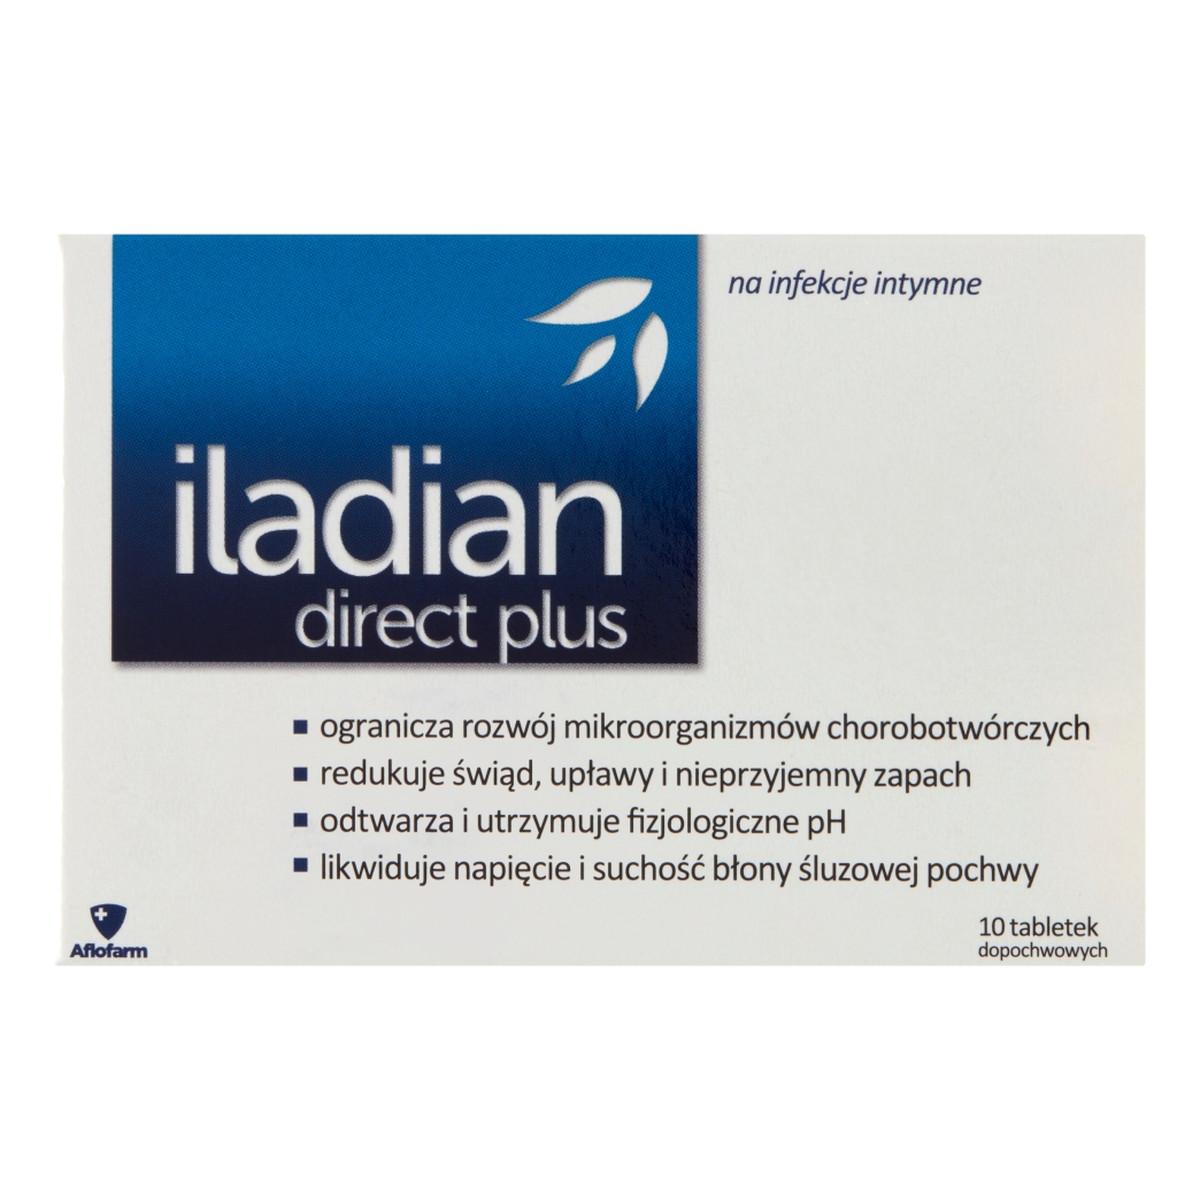 Iladian Direct plus tabletki dopochwowe łagodzące objawy infekcji intymnych 10 tabletek